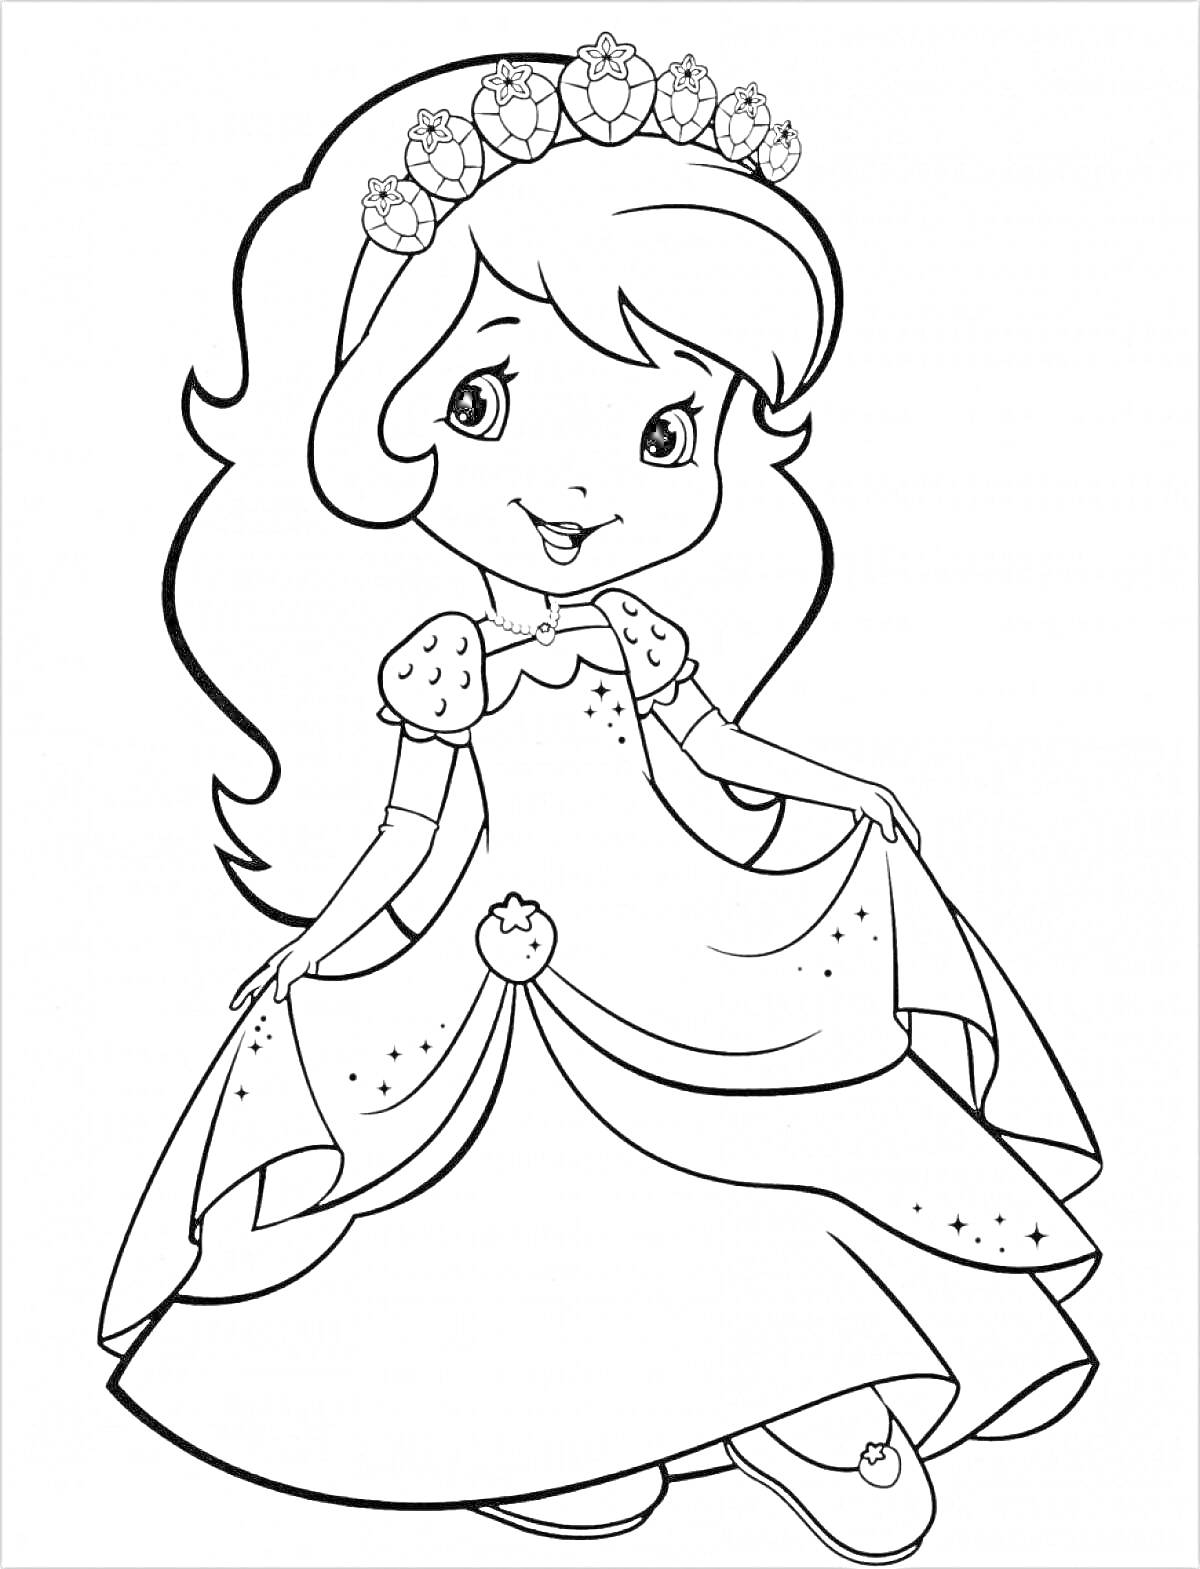 Раскраска Принцесса в короне с цветами, в пышном платье с яблочком на поясе, держащая подол платья обеими руками